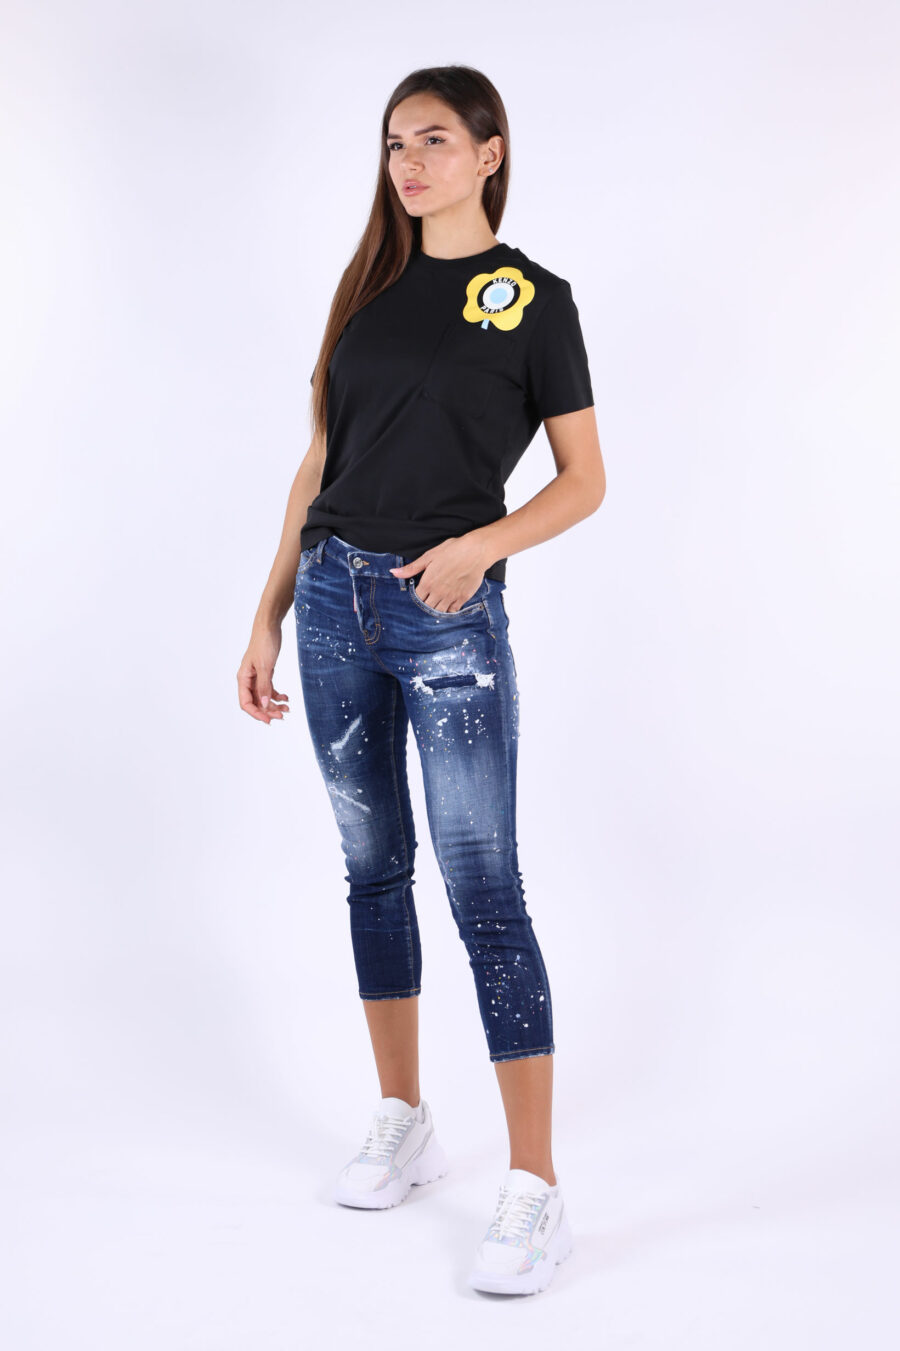 Camiseta negra con logo amarillo "kenzo target" - 361223054662202020